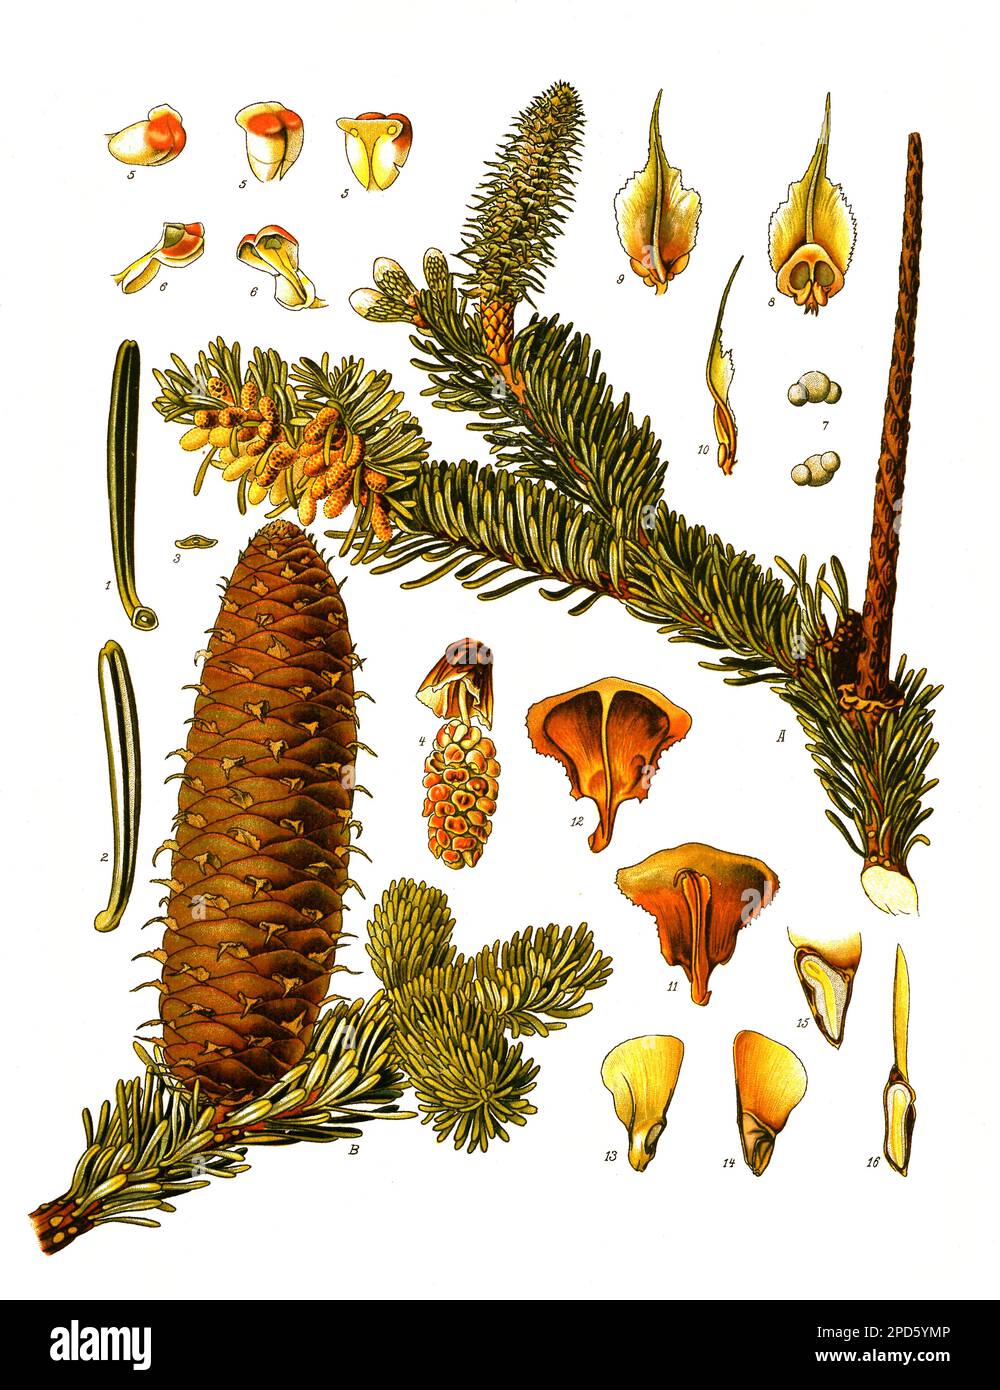 Heilpflanze, Weiß-Tanne, Abies alba, Weißtanne, ist eine europäische Nadelbaumart aus der Gattung Tannen, Historisch, digital restaurierte Reproduktion von einer Vorlage aus dem 19. Jahrhundert, Stock Photo